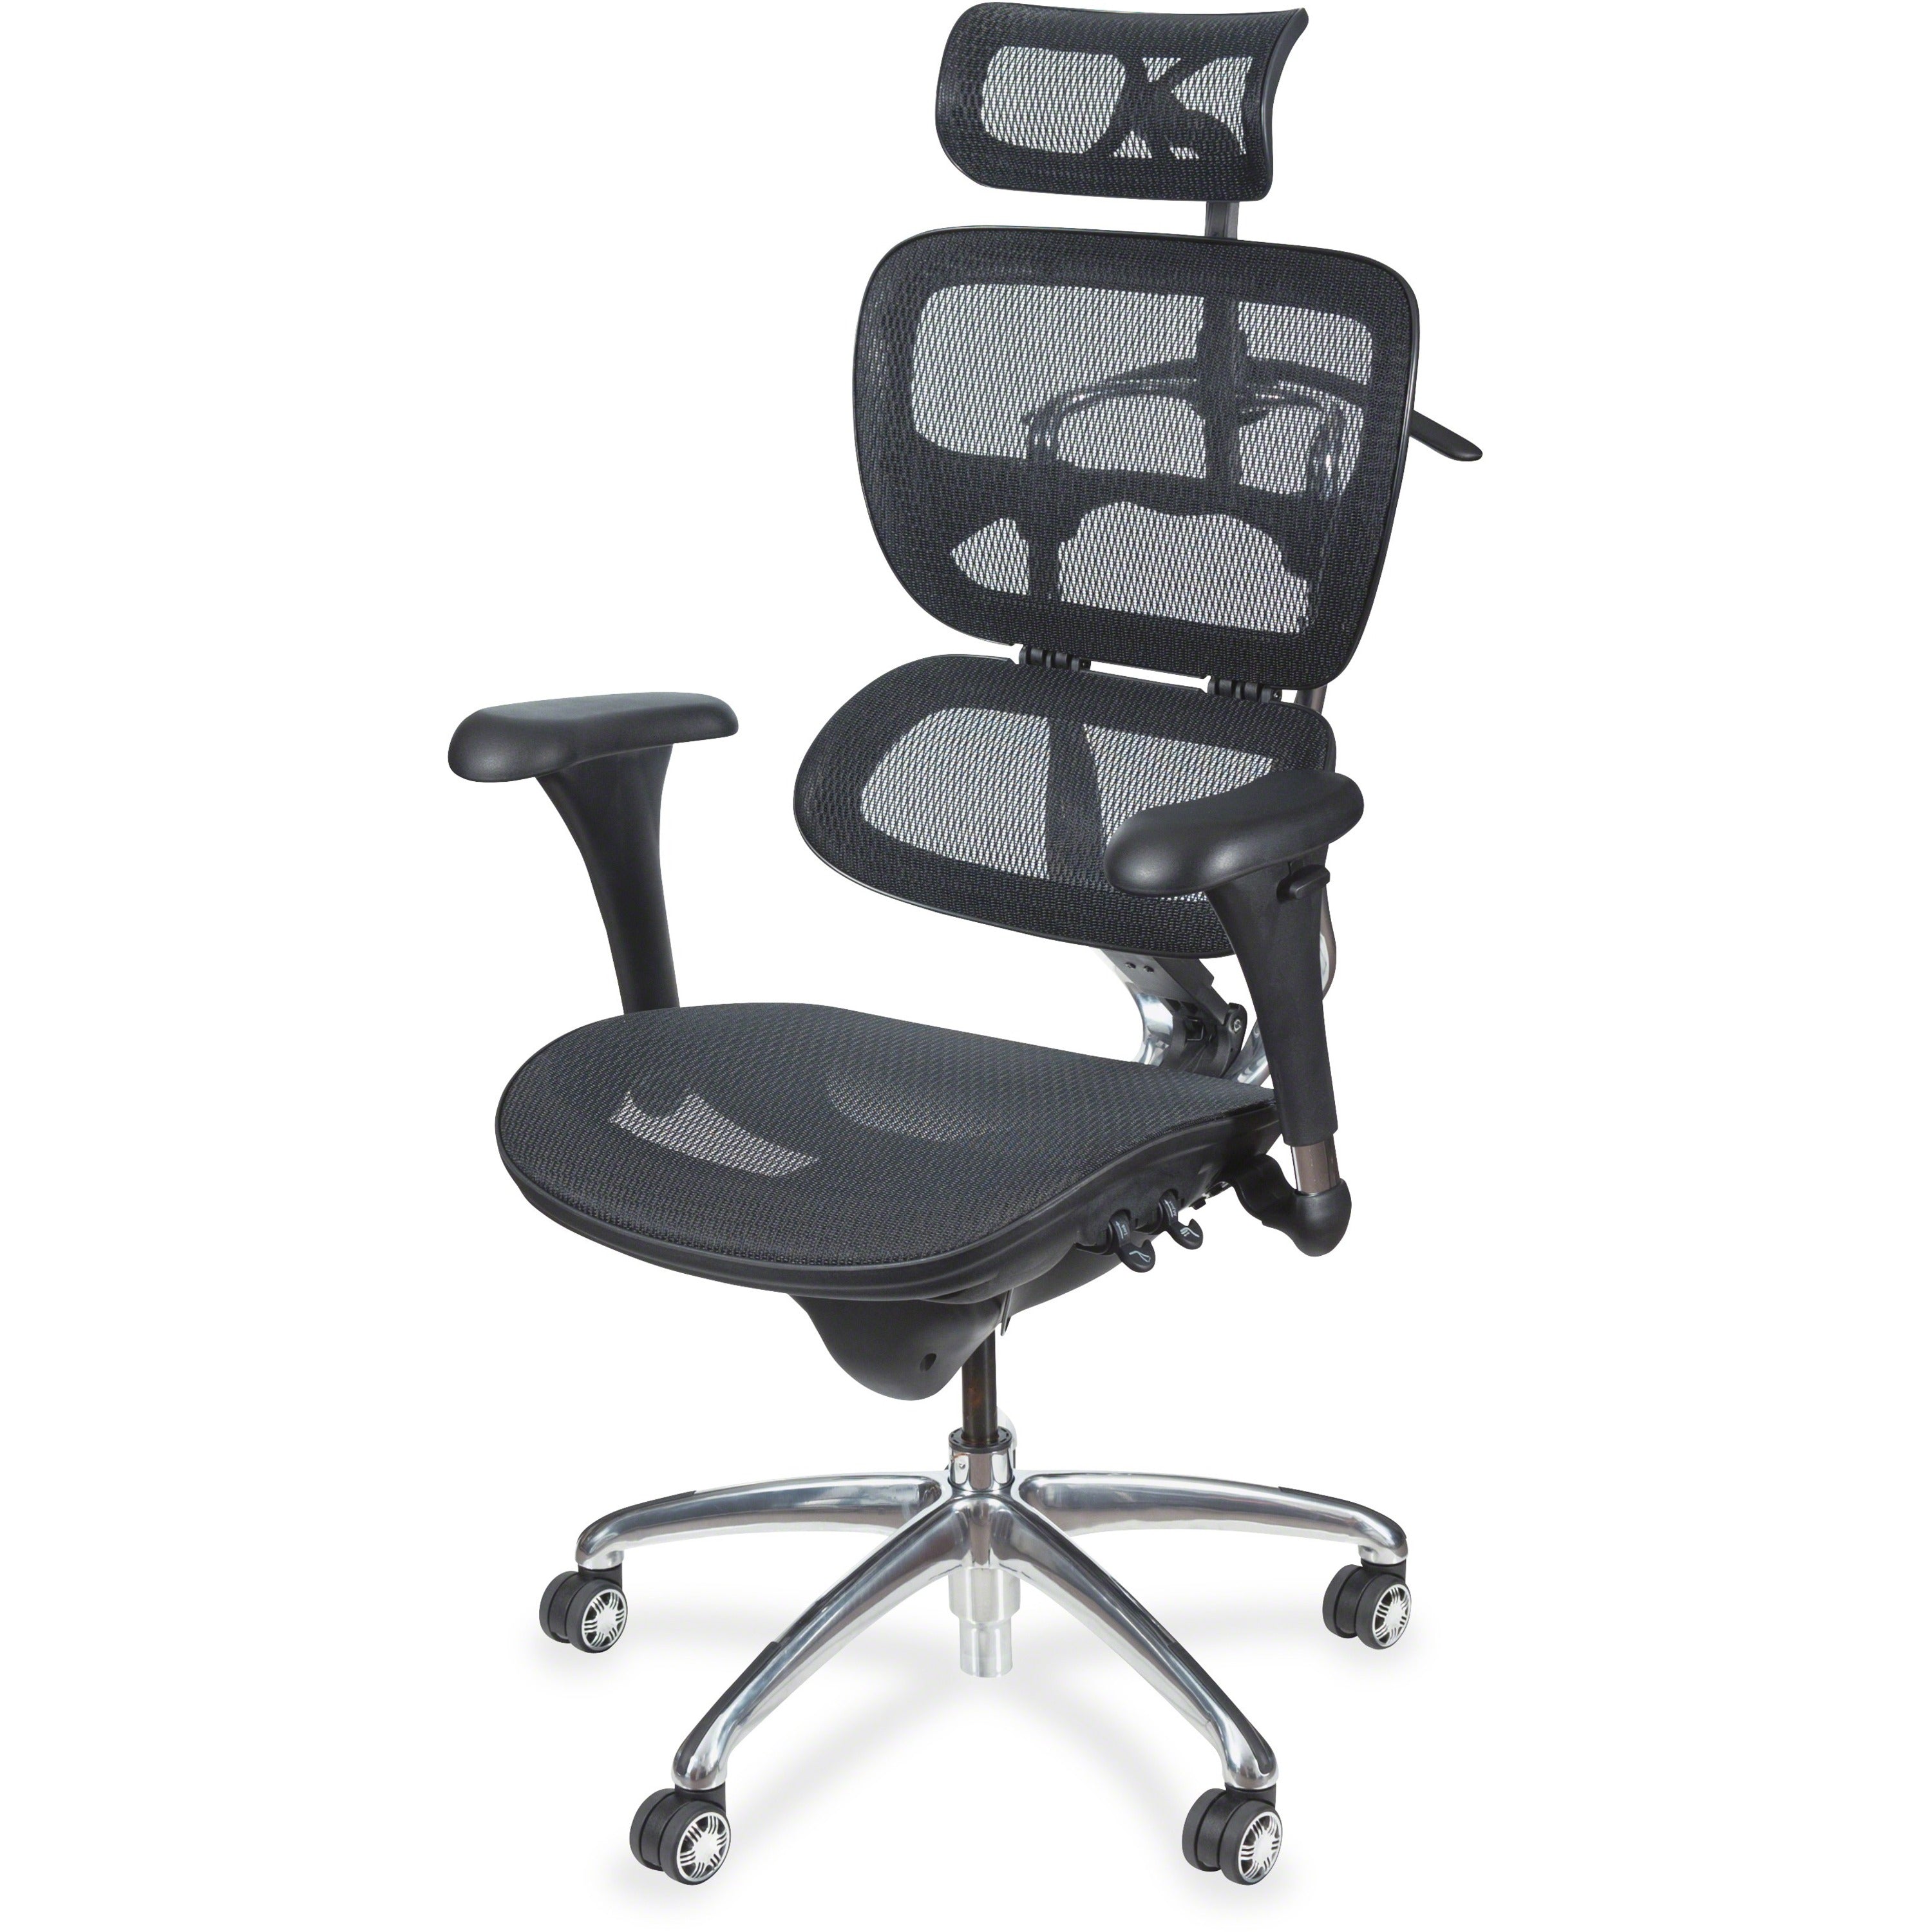 MooreCo Butterfly Chair - Black Mesh Seat - Black Mesh Back - Chrome Frame - High Back - 5-star Base - Armrest - 1 Each - 